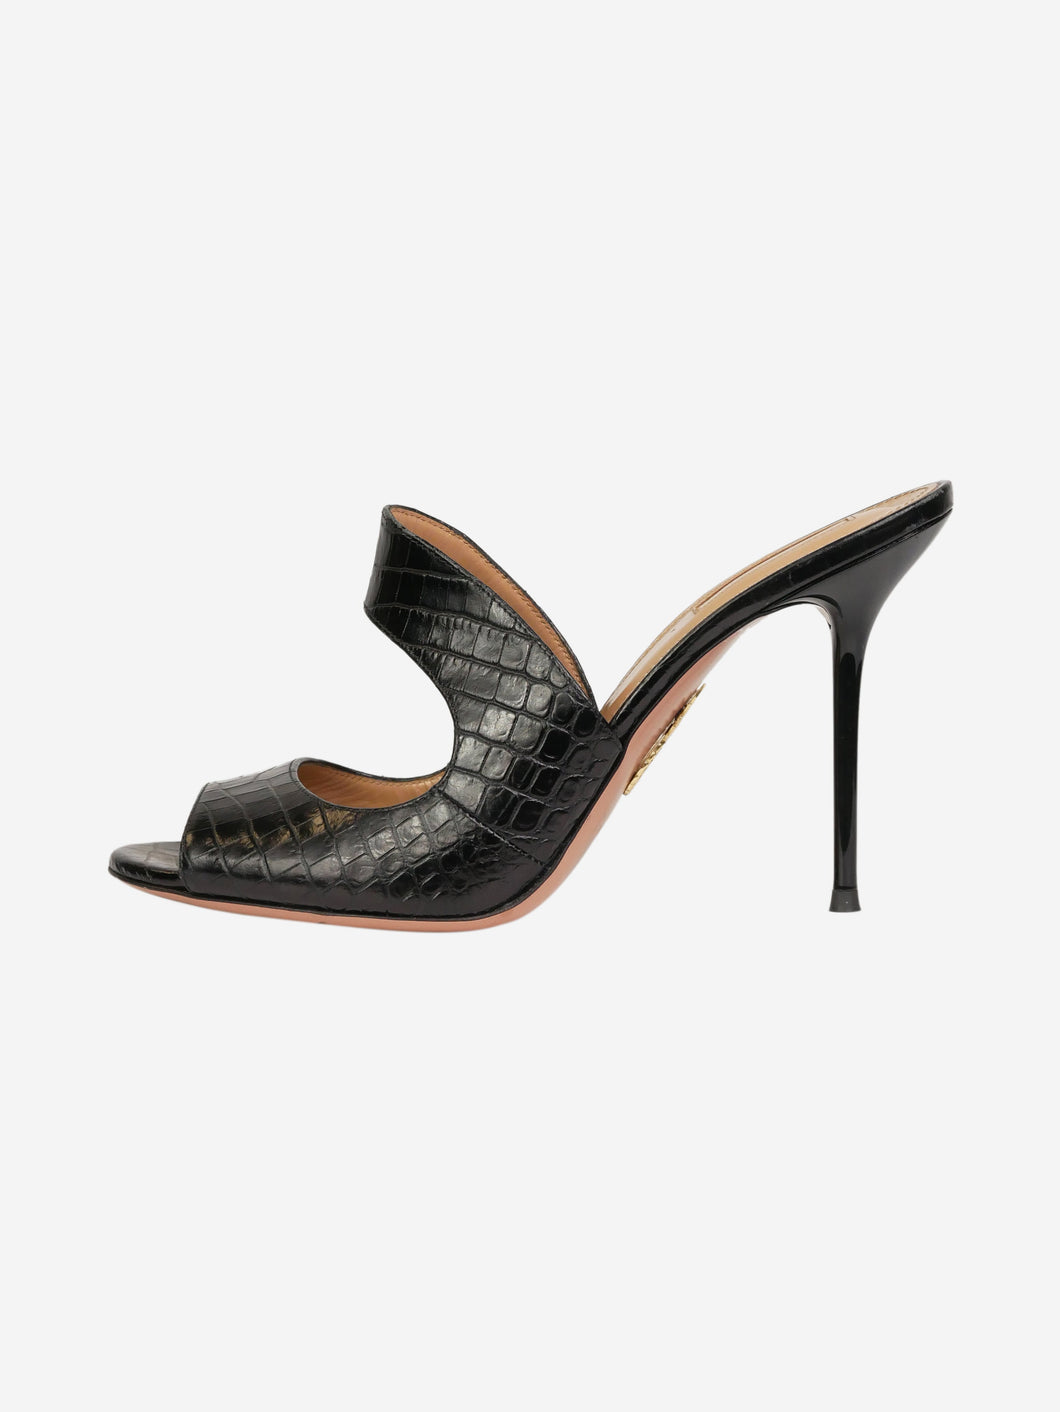 Black croc skin sandal heels Heels Aquazurra 